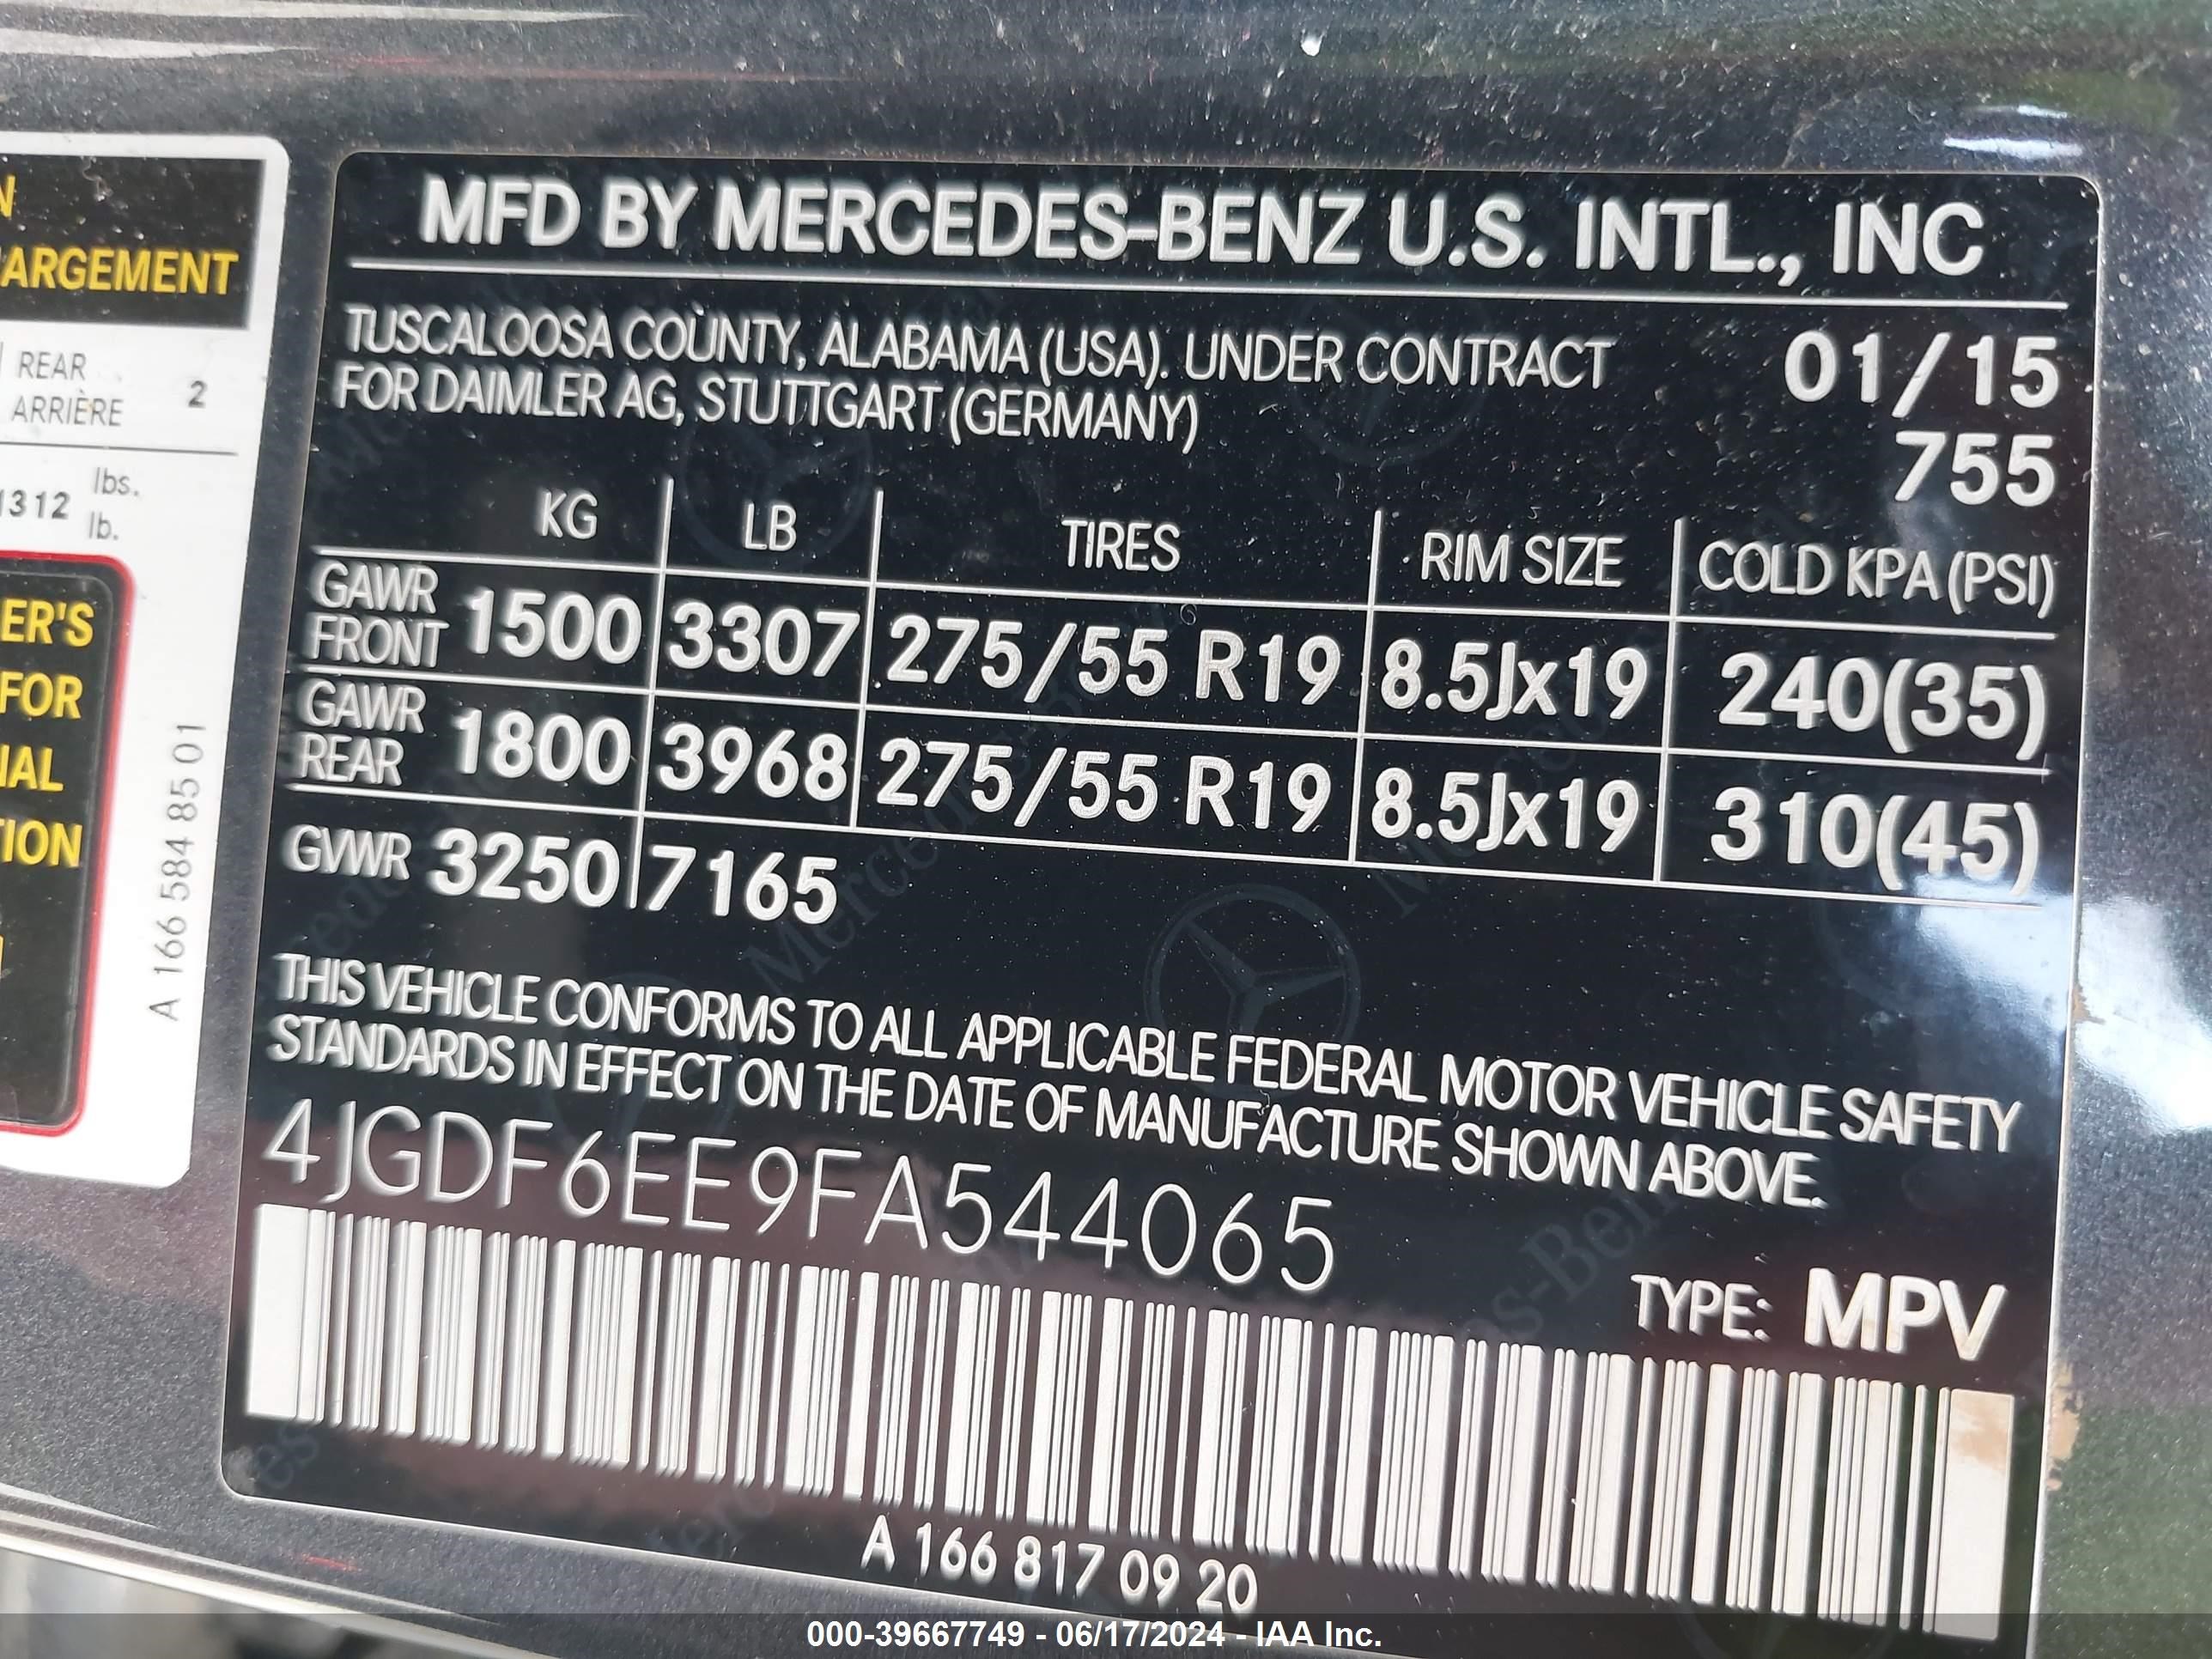 2015 Mercedes-Benz Gl 450 4Matic vin: 4JGDF6EE9FA544065